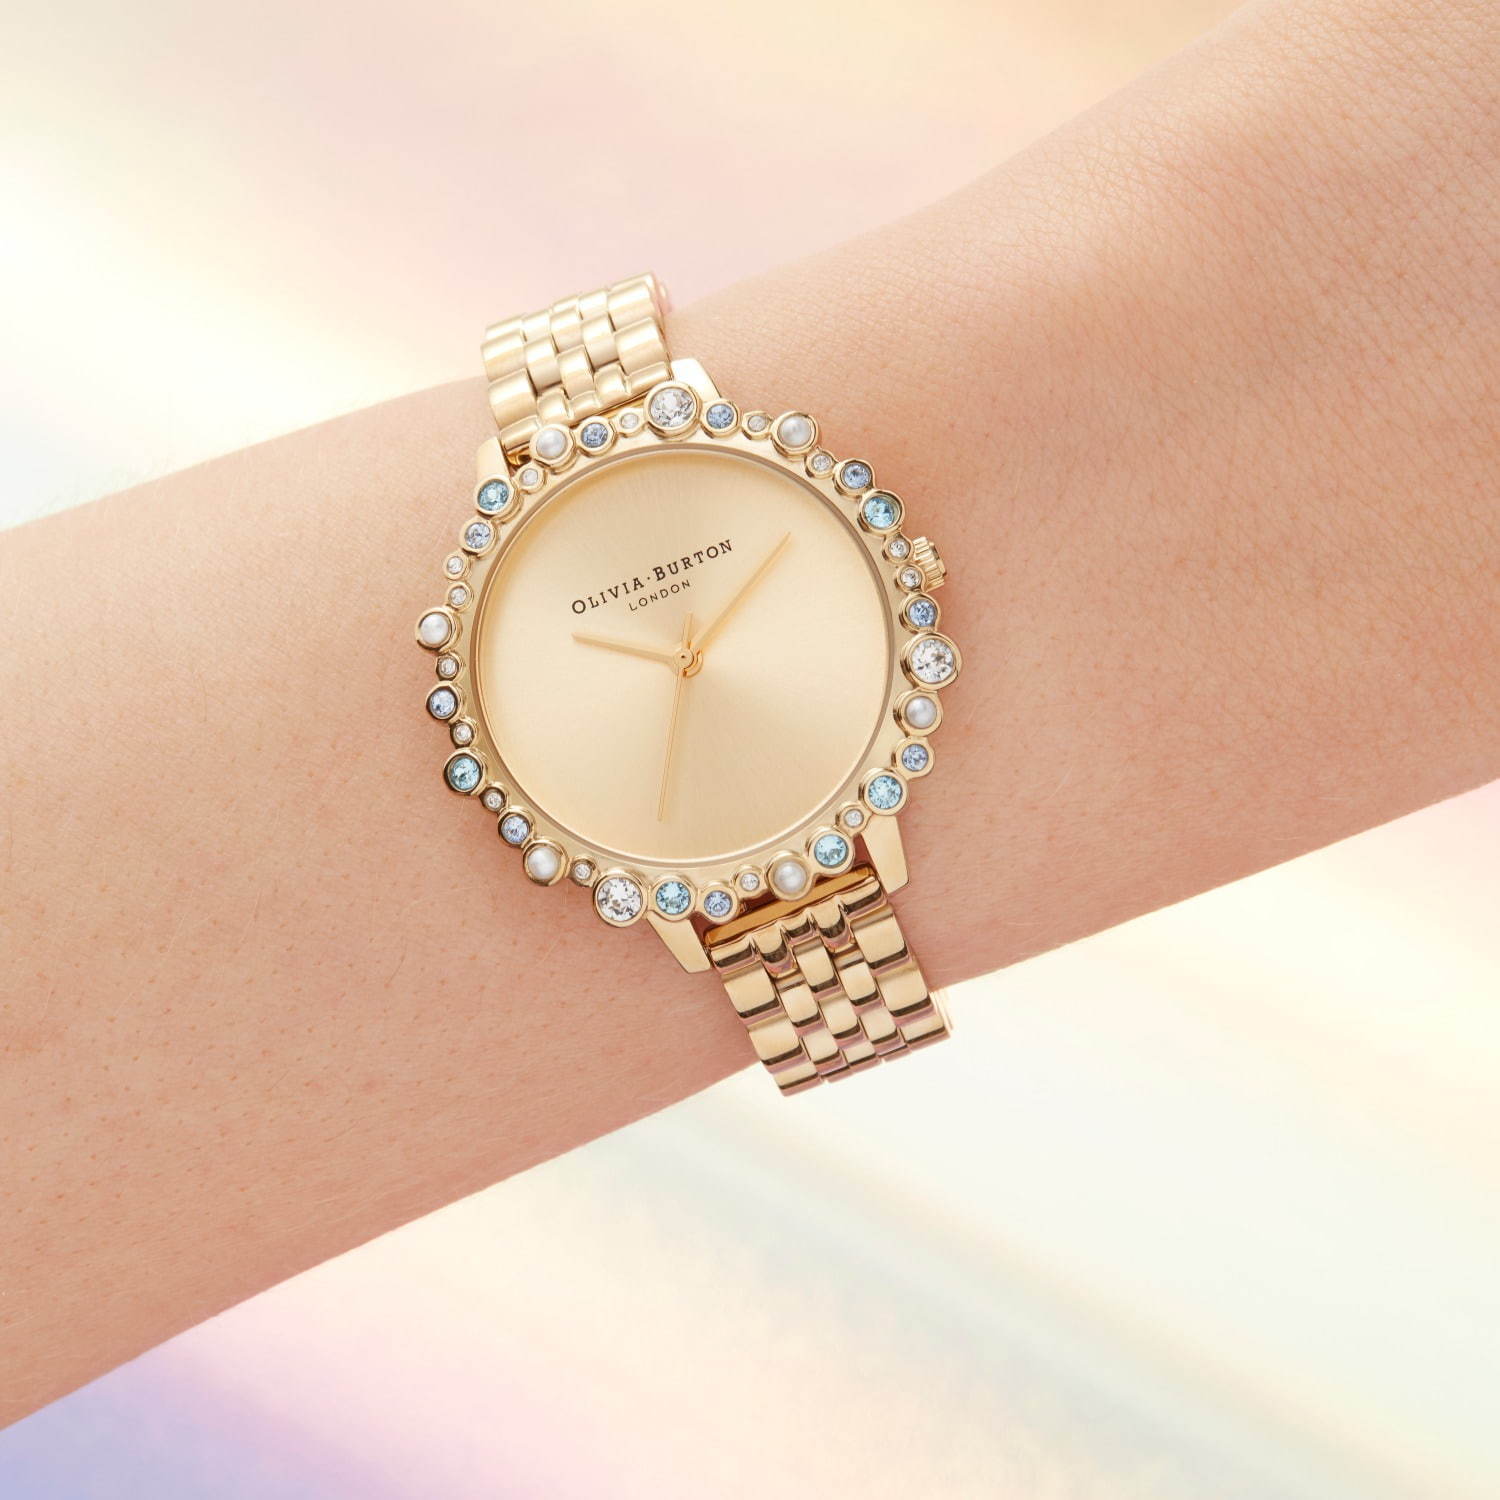 オリビア・バートン“夏の海”イメージの腕時計、キラキラクリスタル付き新宿限定ウォッチ | 写真